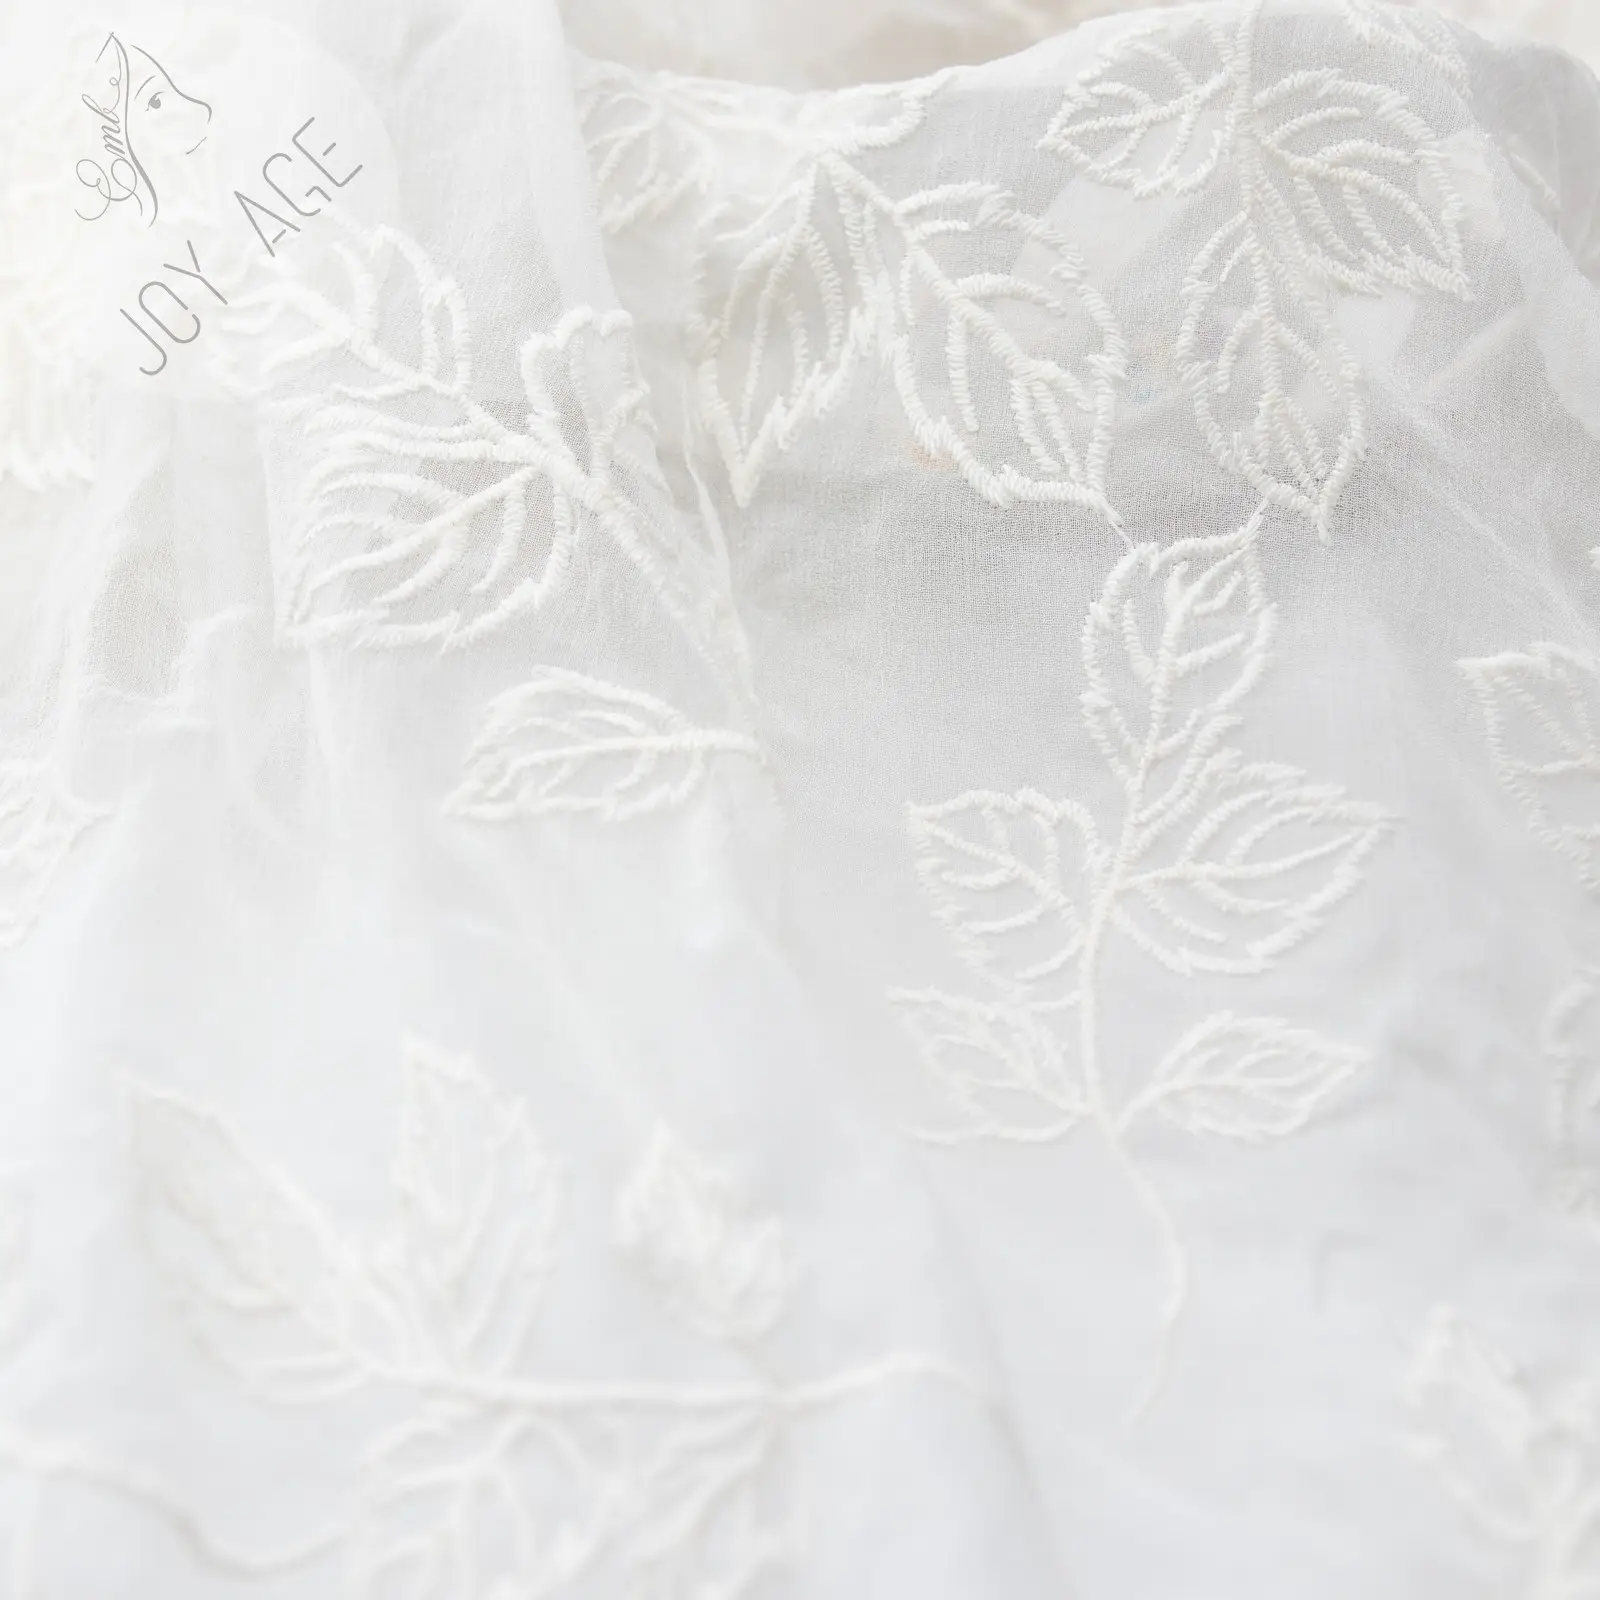 Nova 2021 completa luxo de organza bordado transparente laço algodão abstrato tecido tule vestido de noiva da turquia cortina